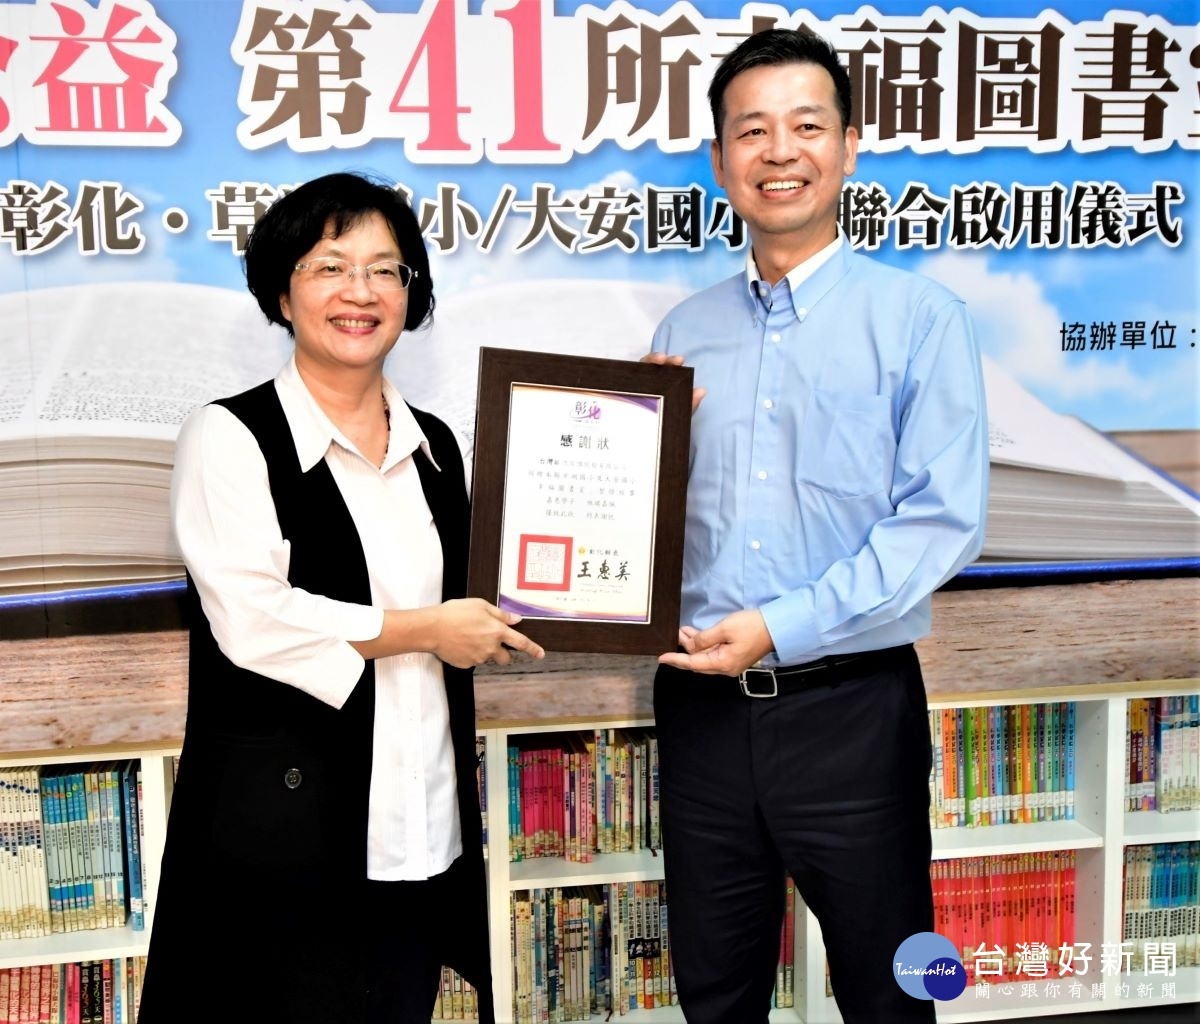 縣長王惠美頒發感謝狀感謝公益捐贈「幸福圖書室」。